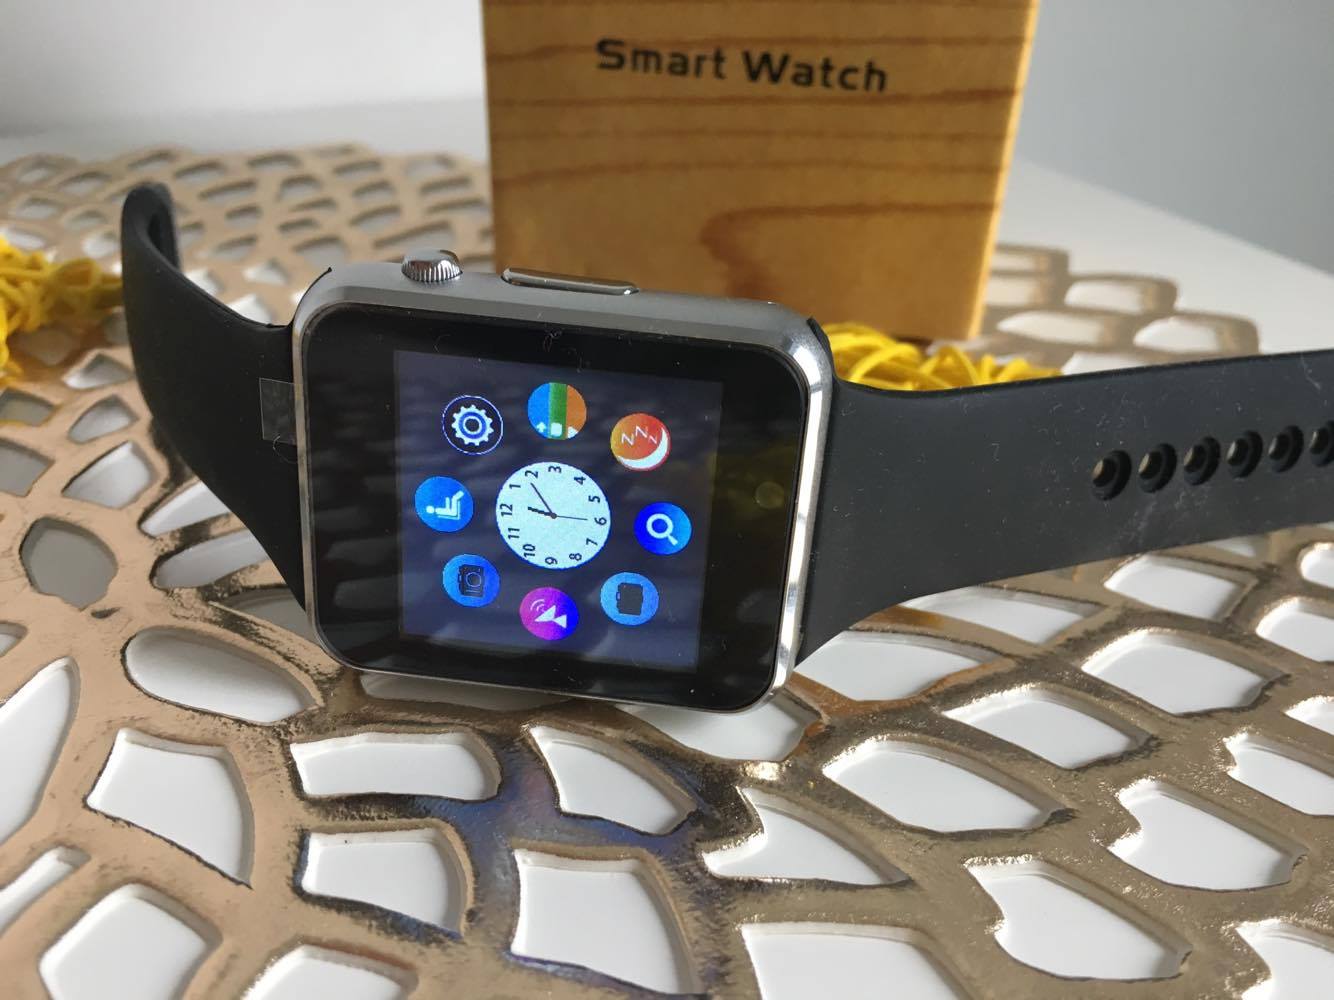 Cui ii poti oferi cadou un smartwatch?